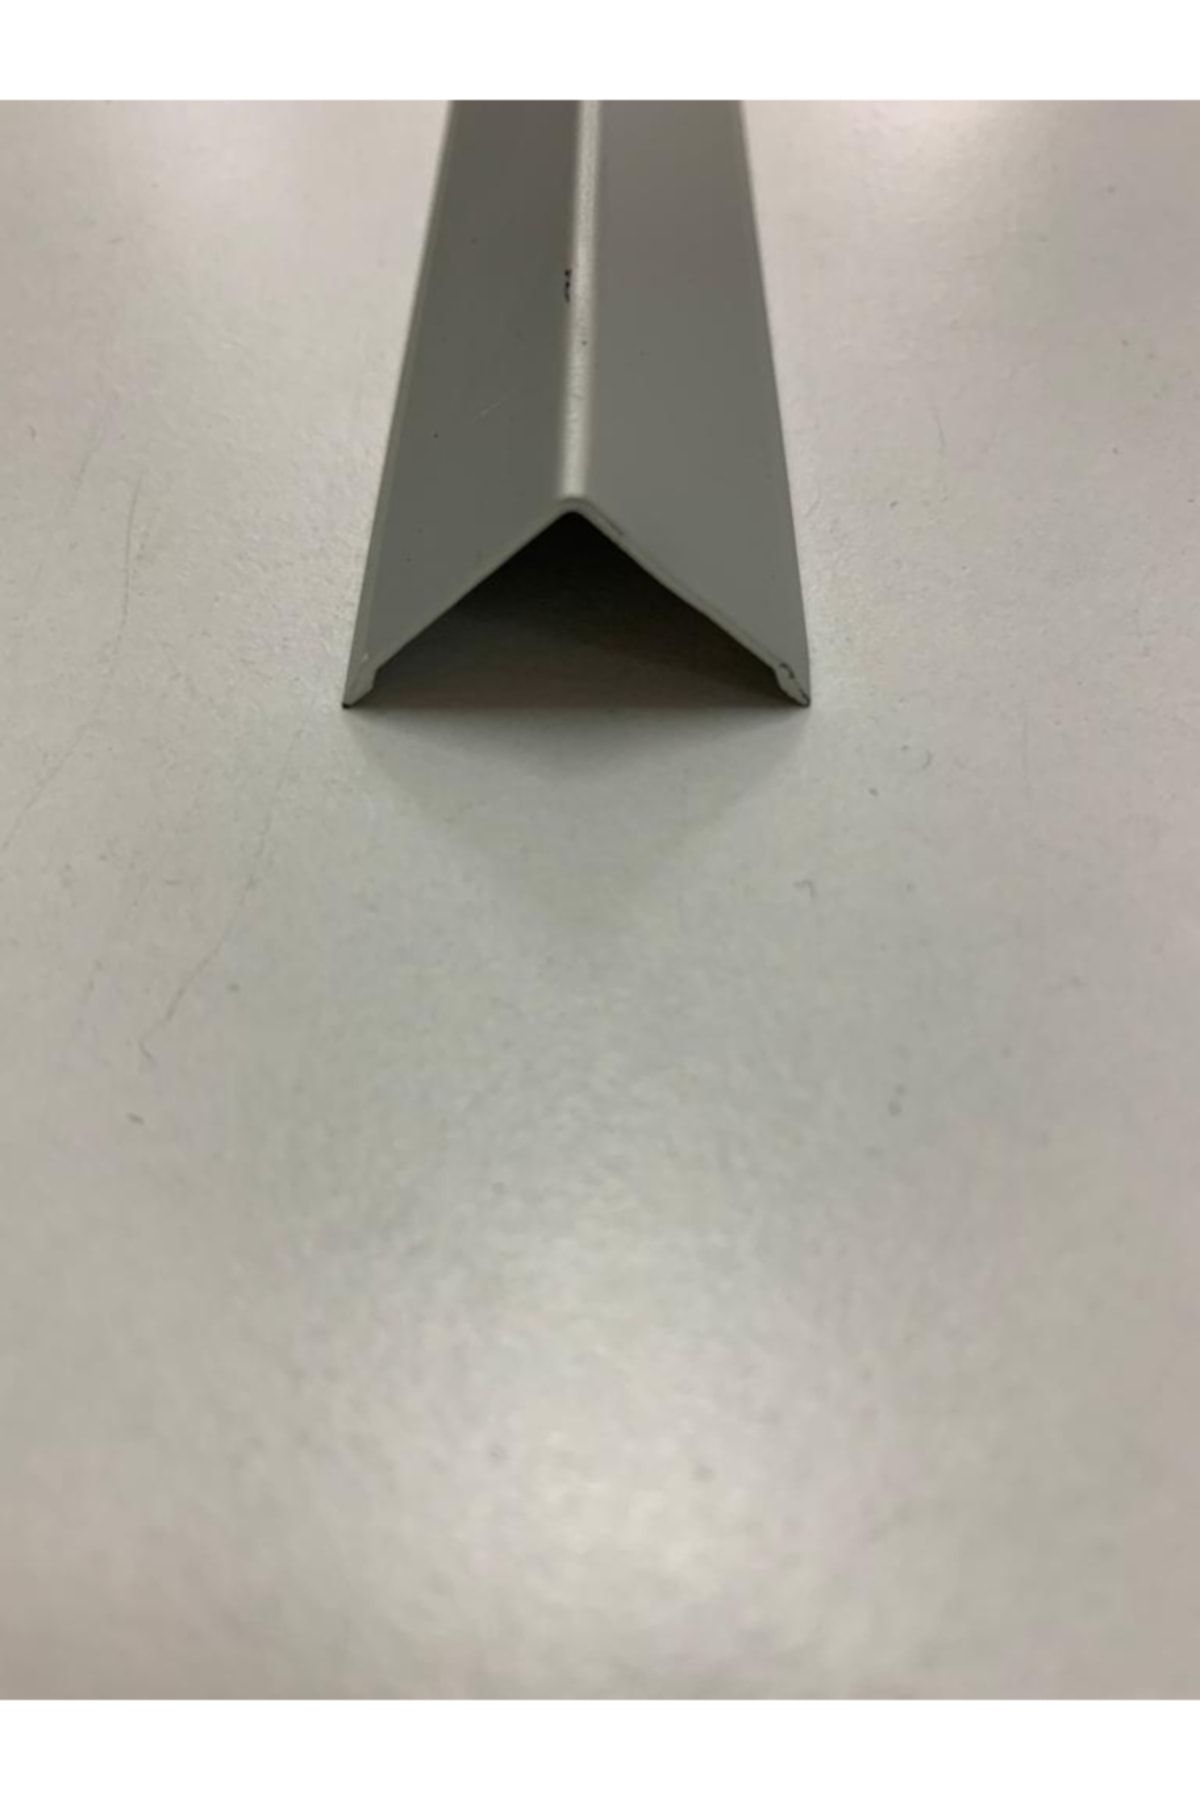 DORA Alüminyum 2x2 L Köşe Profili Mat Gri (100 Cm)